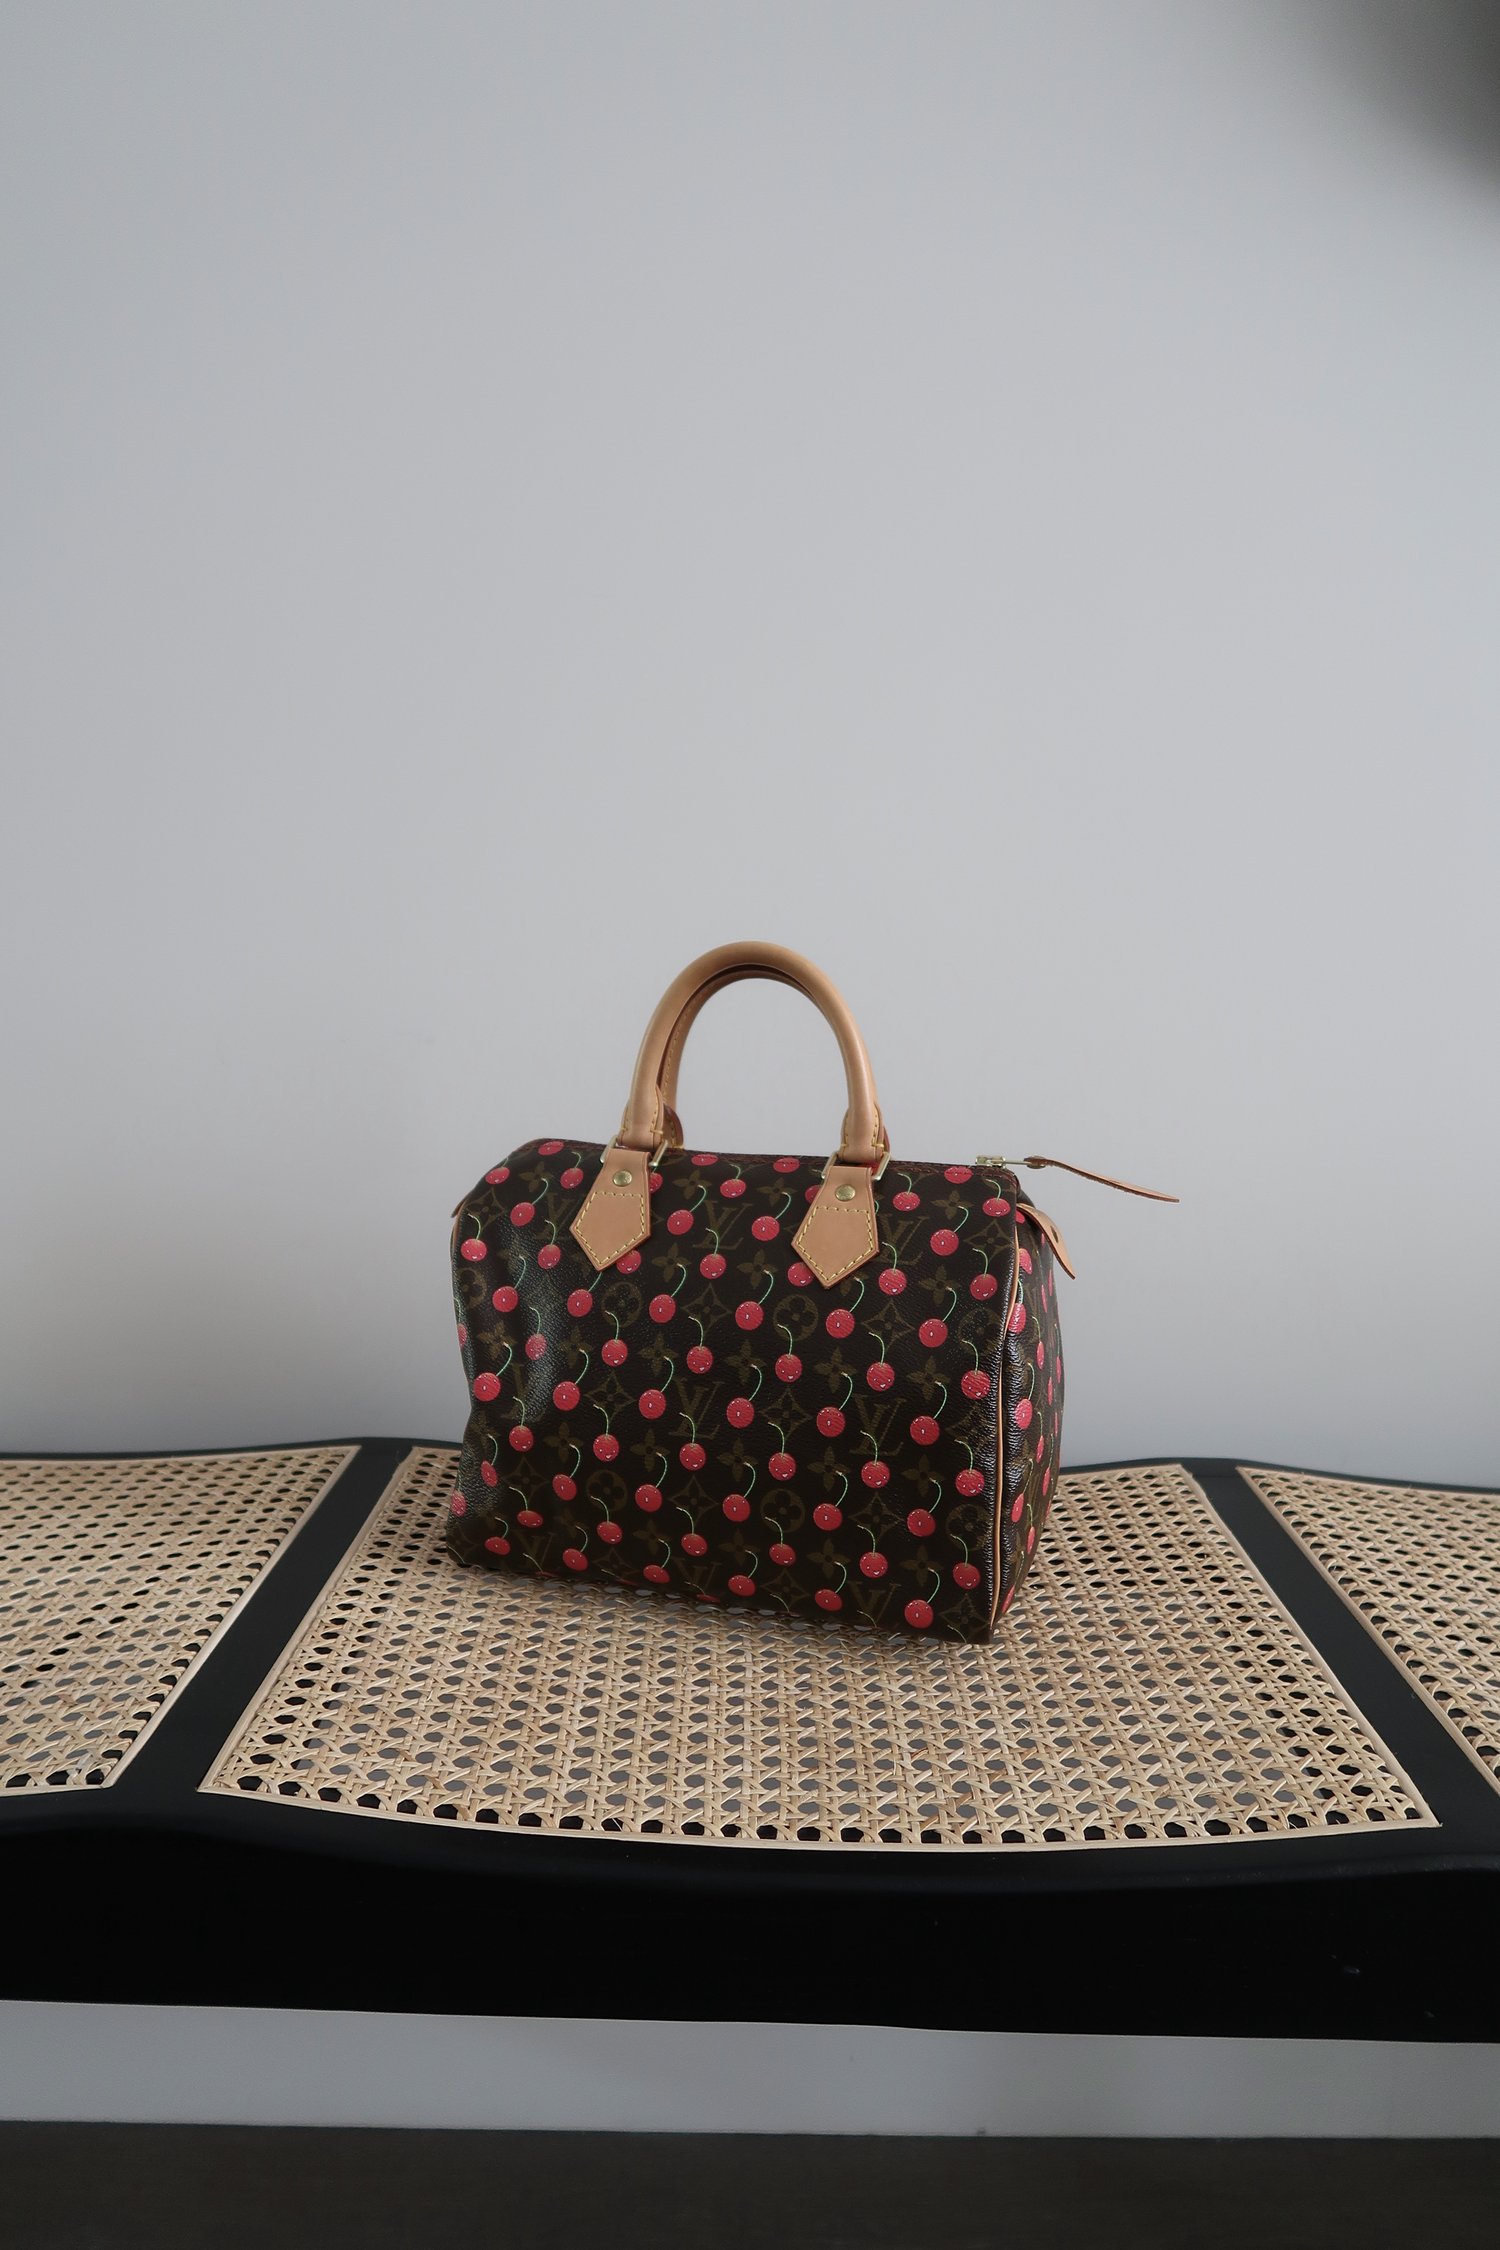 Louis Vuitton Cherry Speedy 25 Handbag by Takashi Murakami